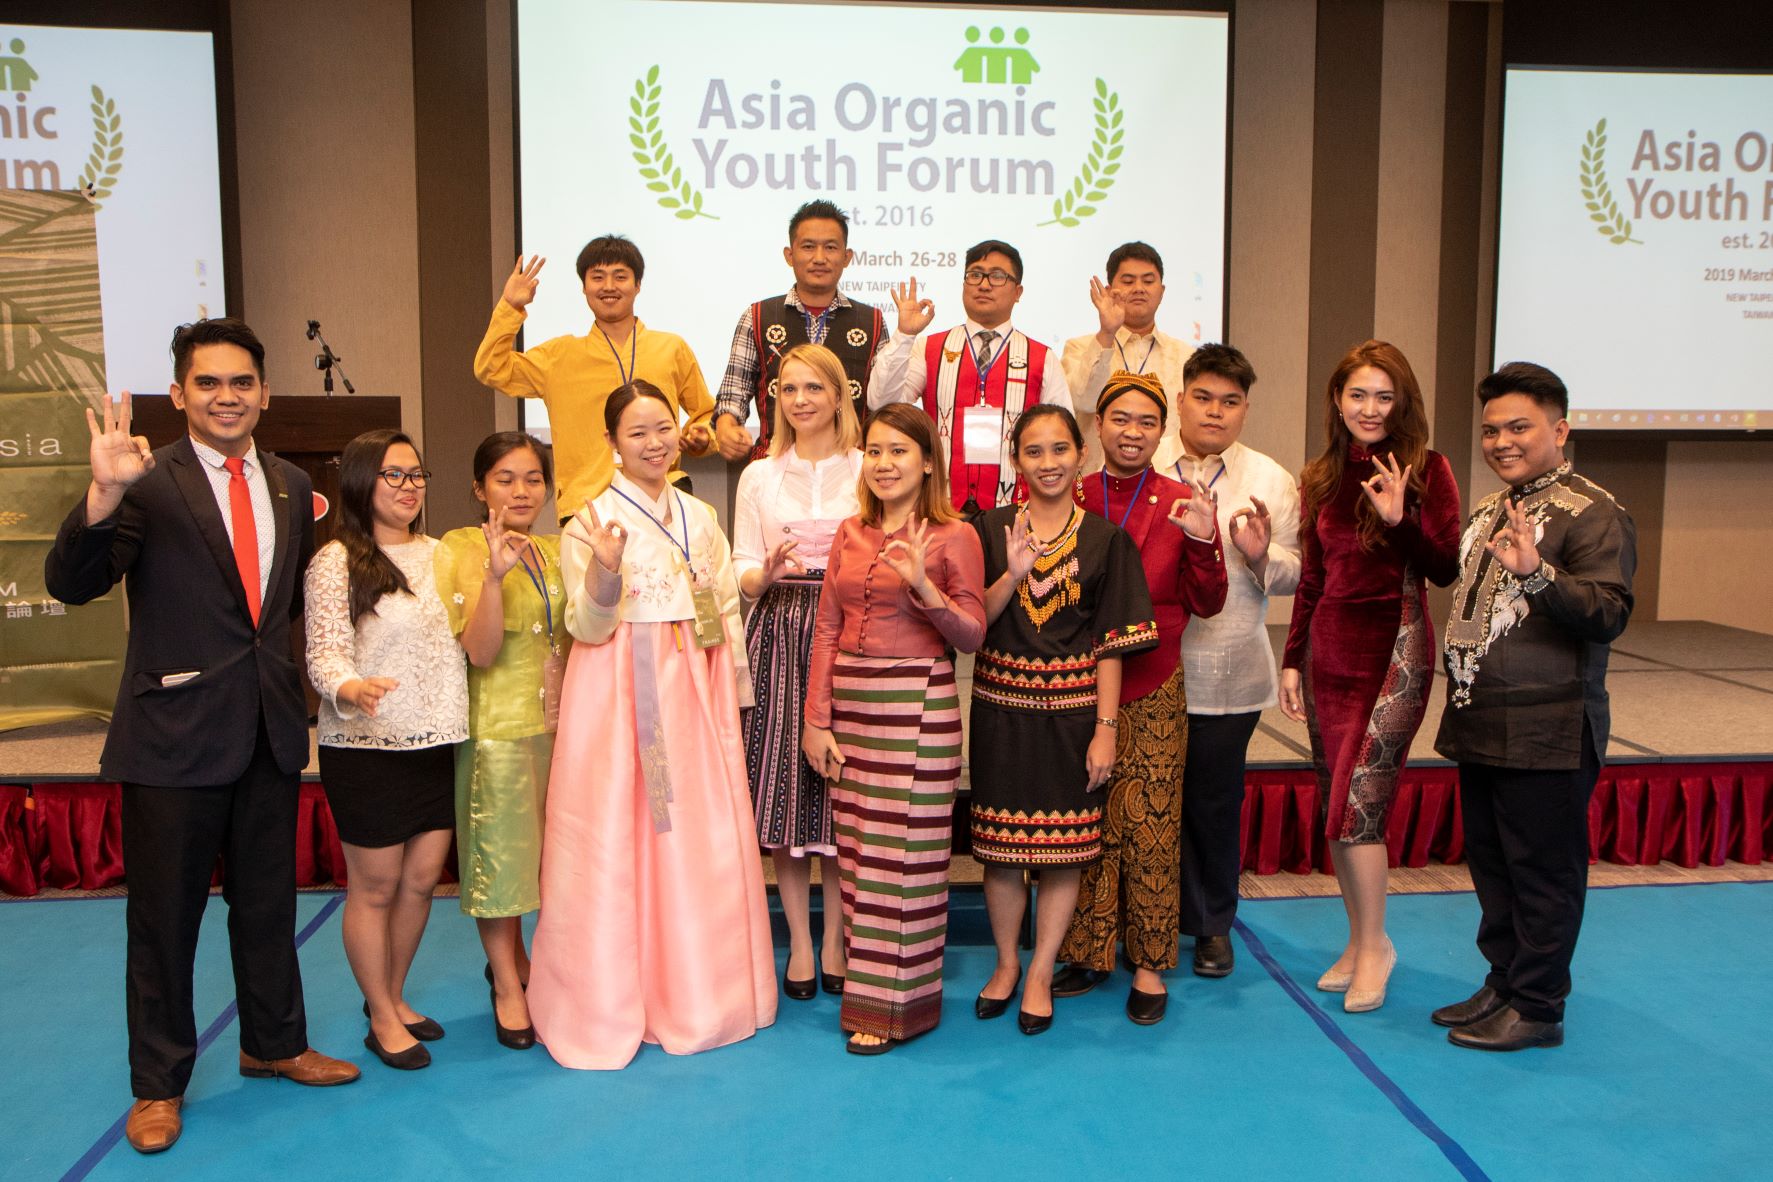 新北市加入IFOAM Asia，積極參與國際有機農業事務，主辦「亞洲有機青年論壇」